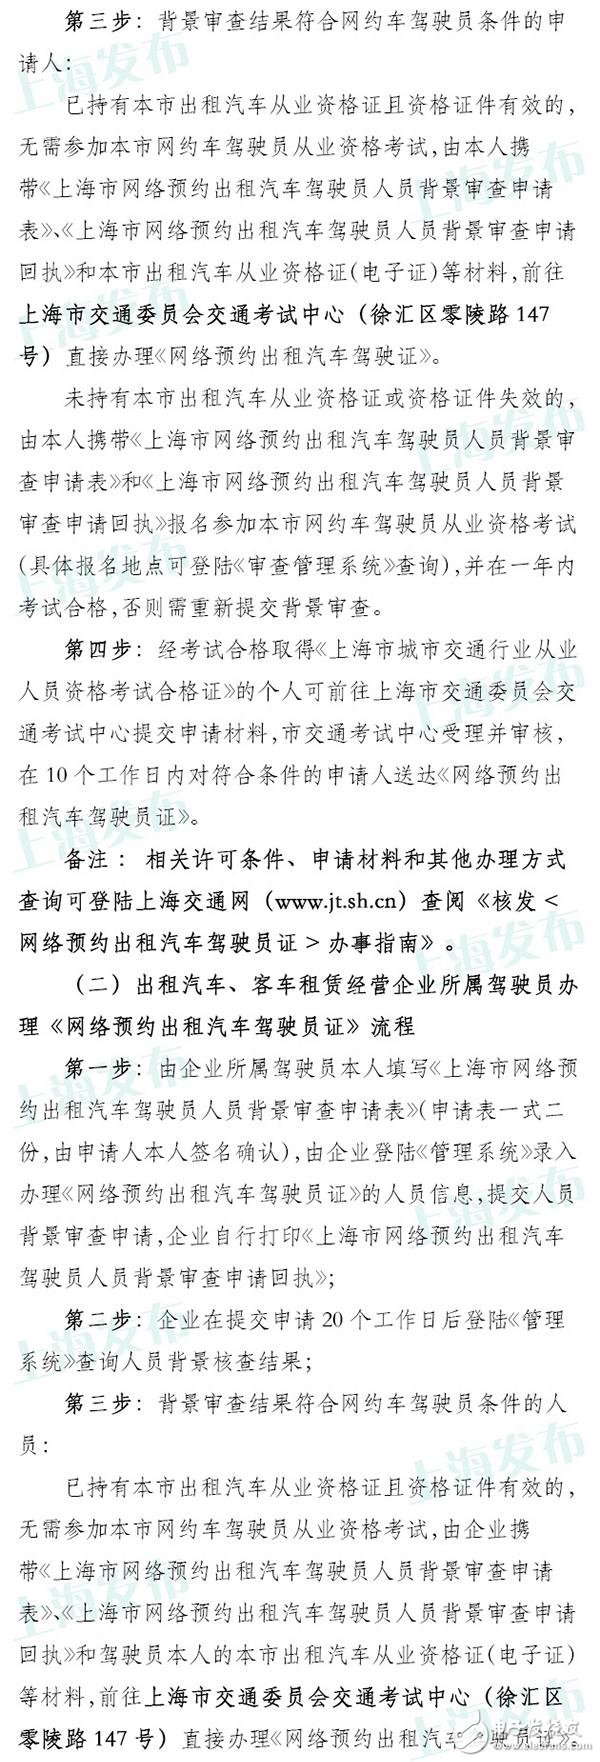 上海网约车申请今日已开放 具体流程公布无从业资格需考试